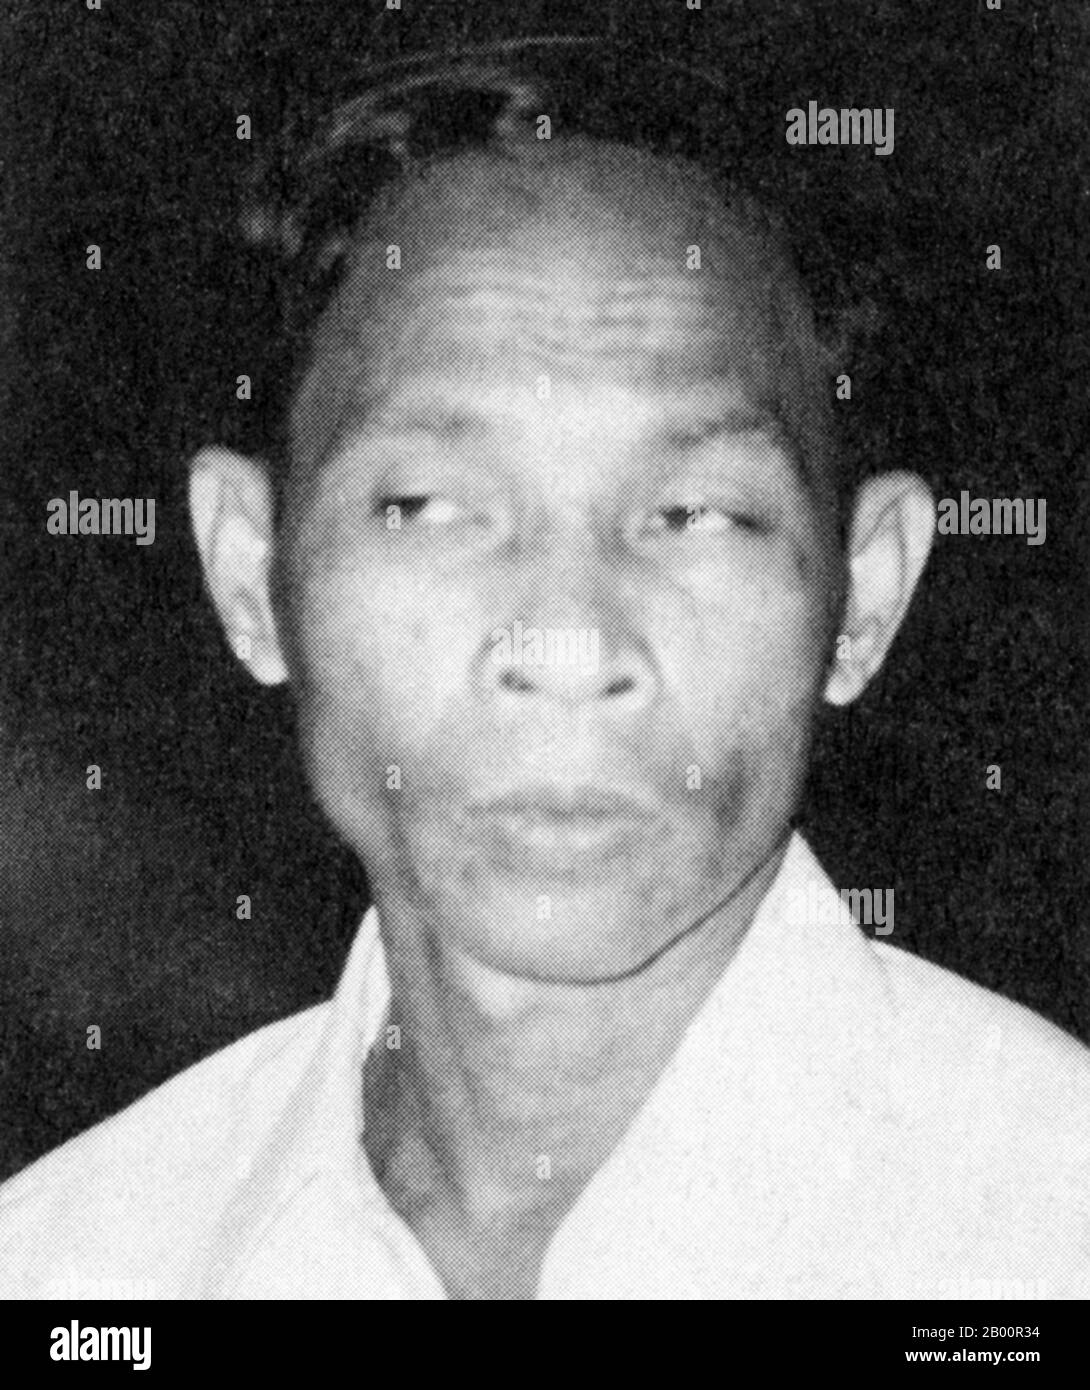 Cambogia: Heng Samrin (nato nel 1934), presidente della Repubblica popolare di Kampuchea e dello Stato della Cambogia (1979-1993). Heng Samrin (1934) è un politico cambogiano. È stato presidente della Repubblica popolare di Kampuchea e dello Stato della Cambogia (1979-1993), e successivamente vice presidente (1998-2006) e presidente dell'Assemblea nazionale della Cambogia dal 2006. Foto Stock